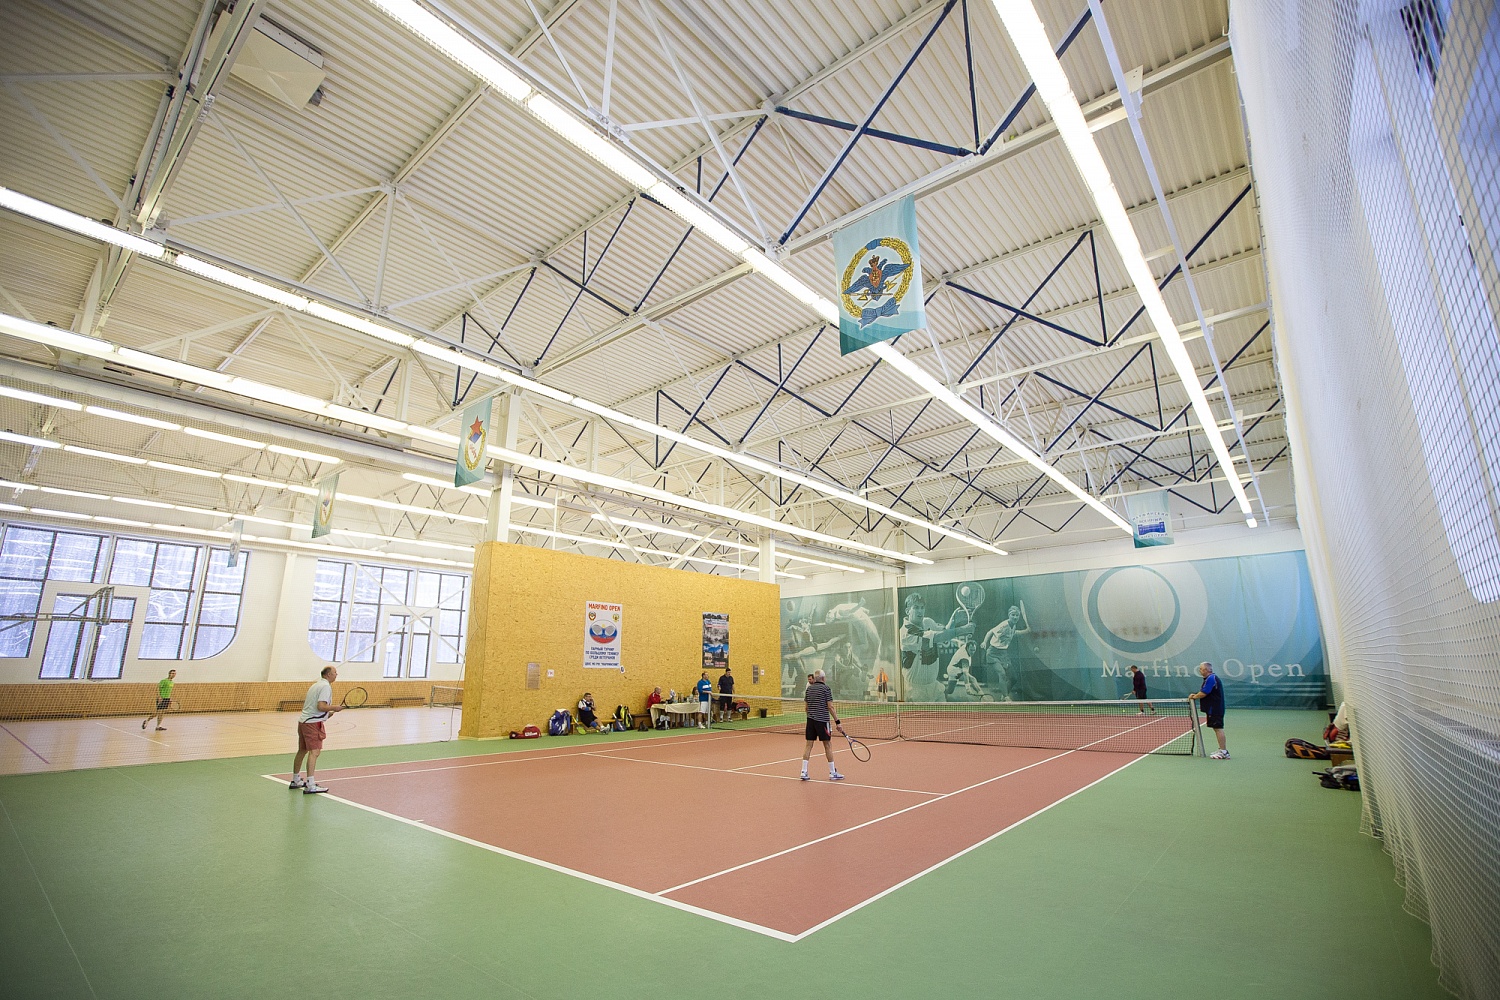 Открытый  турнир по теннису среди ветеранов «Марфино опен - 2018» 12-16 декабря.